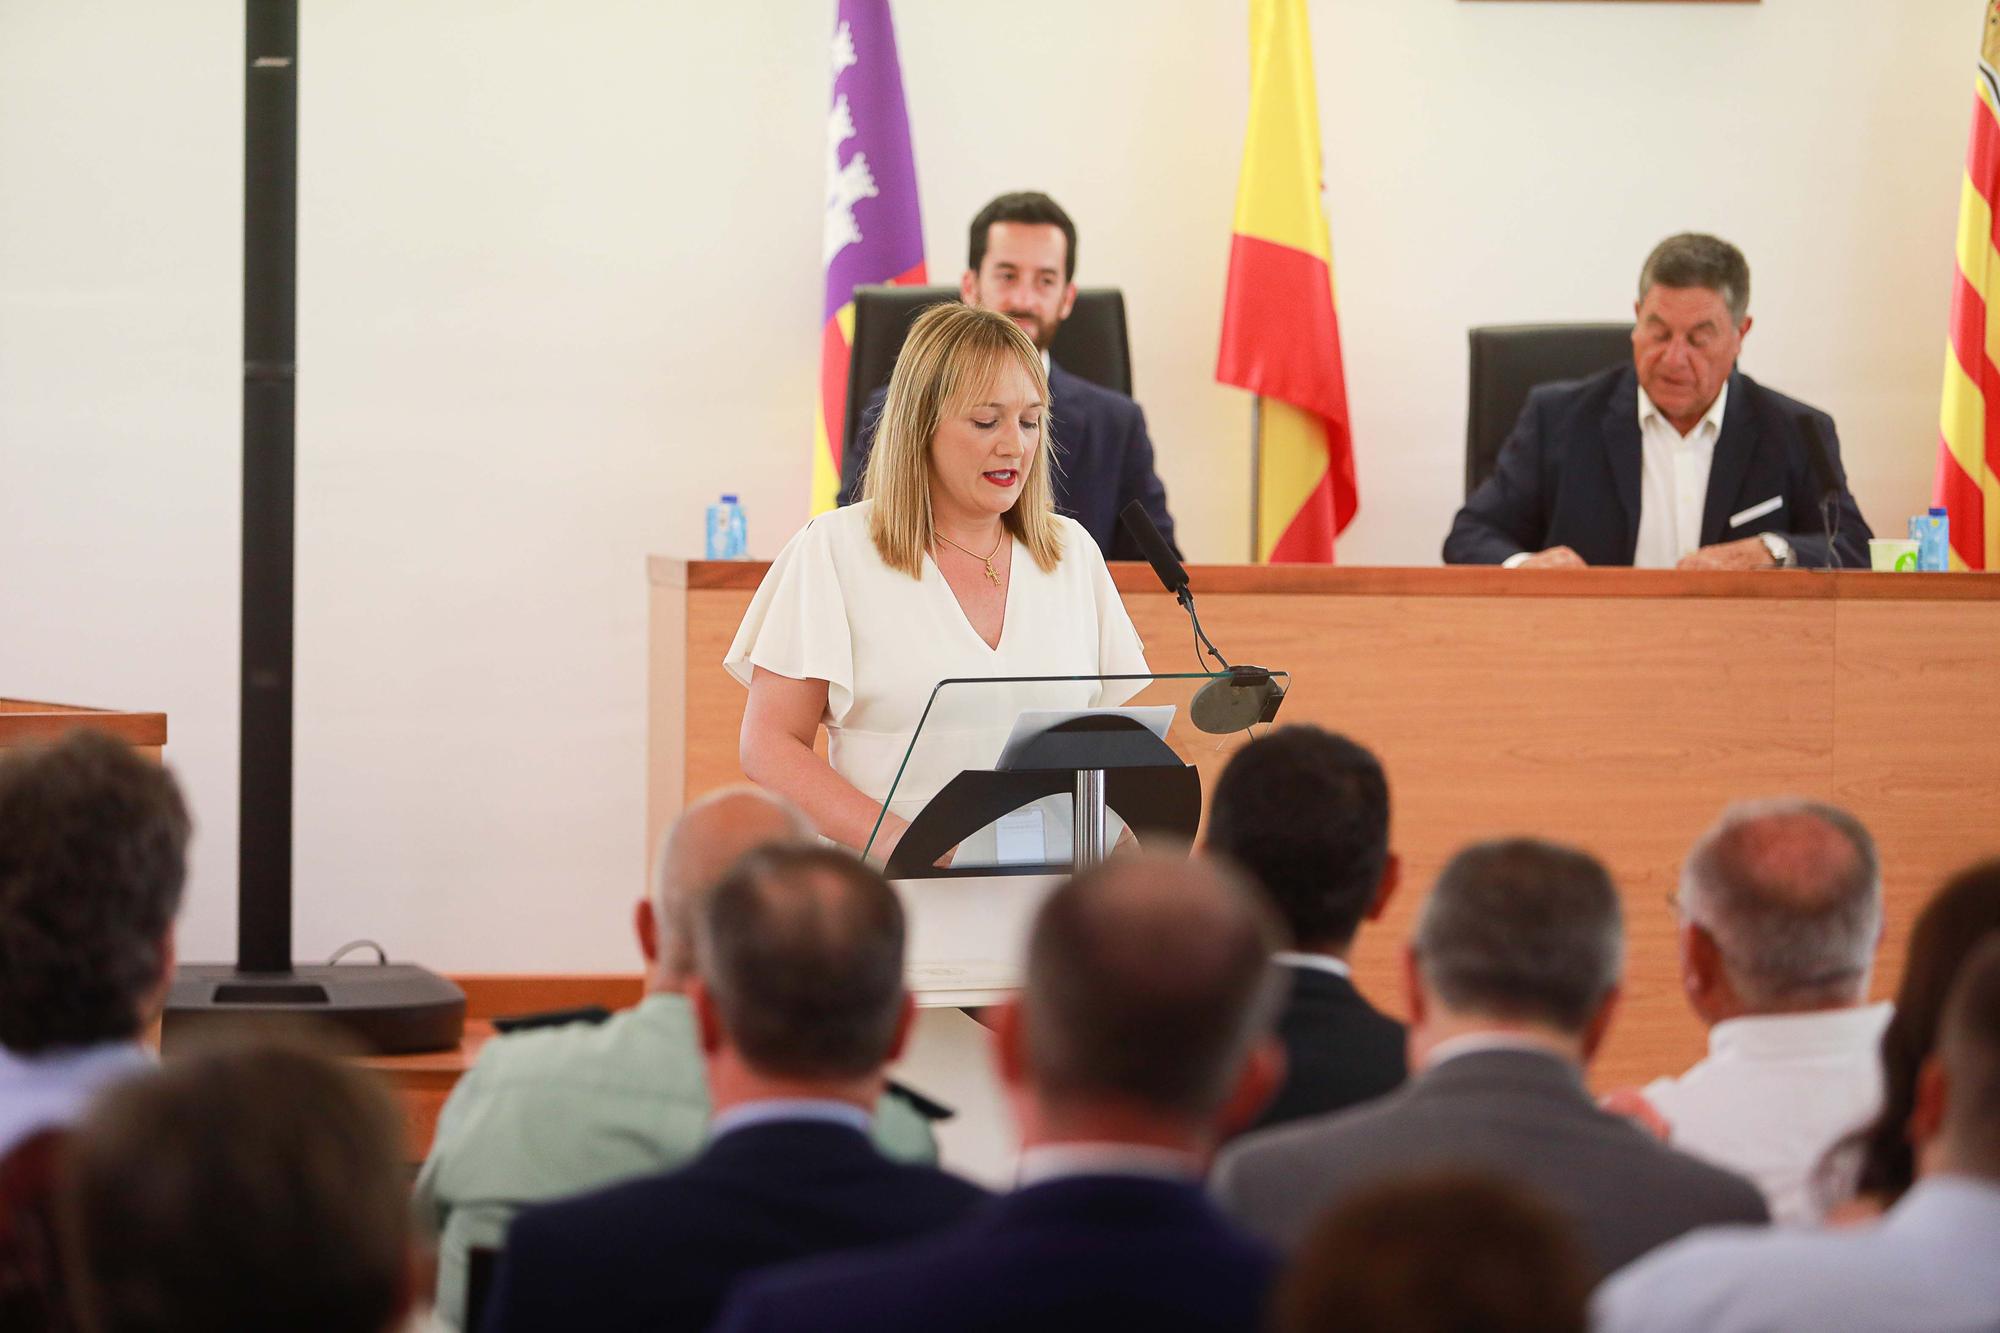 Mira aquí las imágenes de la toma de posesión de Tania Marí como alcaldesa de Sant Joan